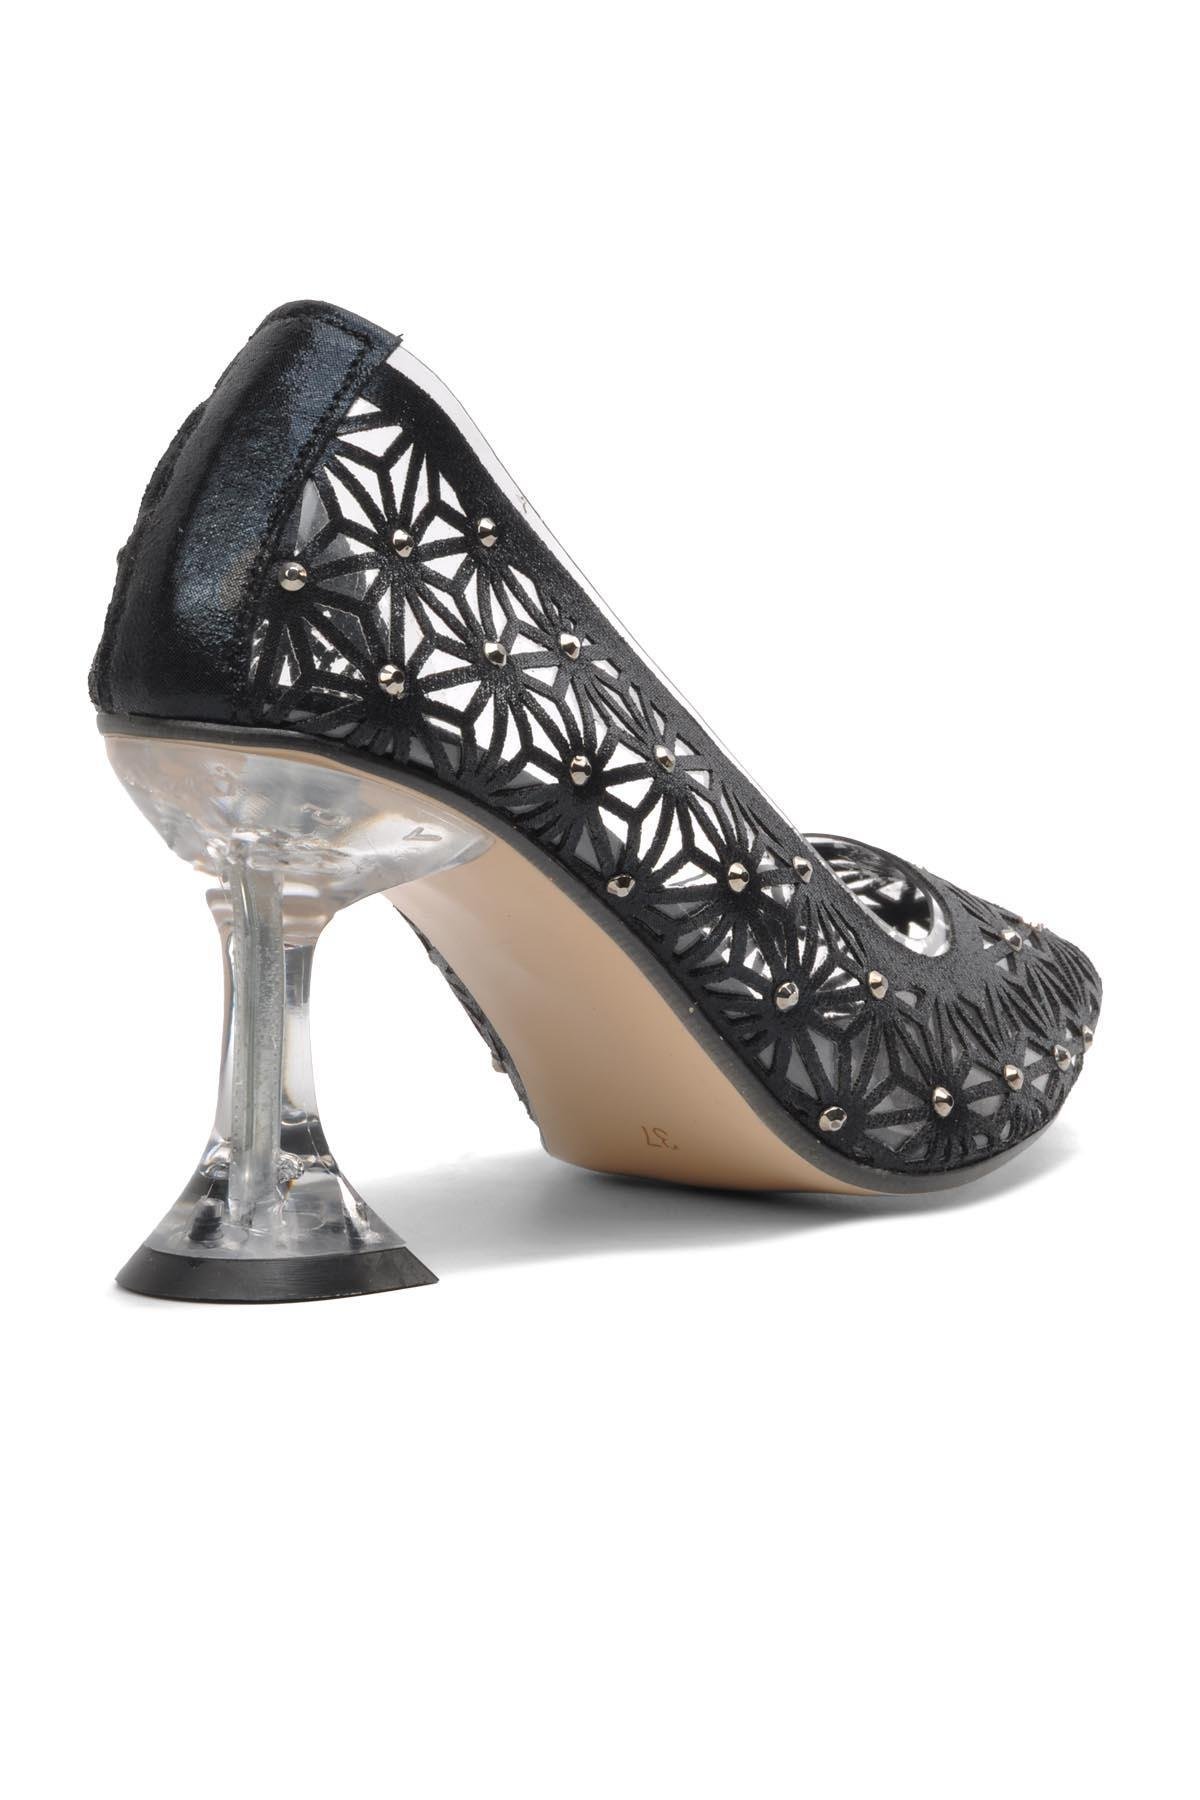 Pierre Cardin 51742 Siyah Kadın Topuklu Ayakkabı - Ayakmod